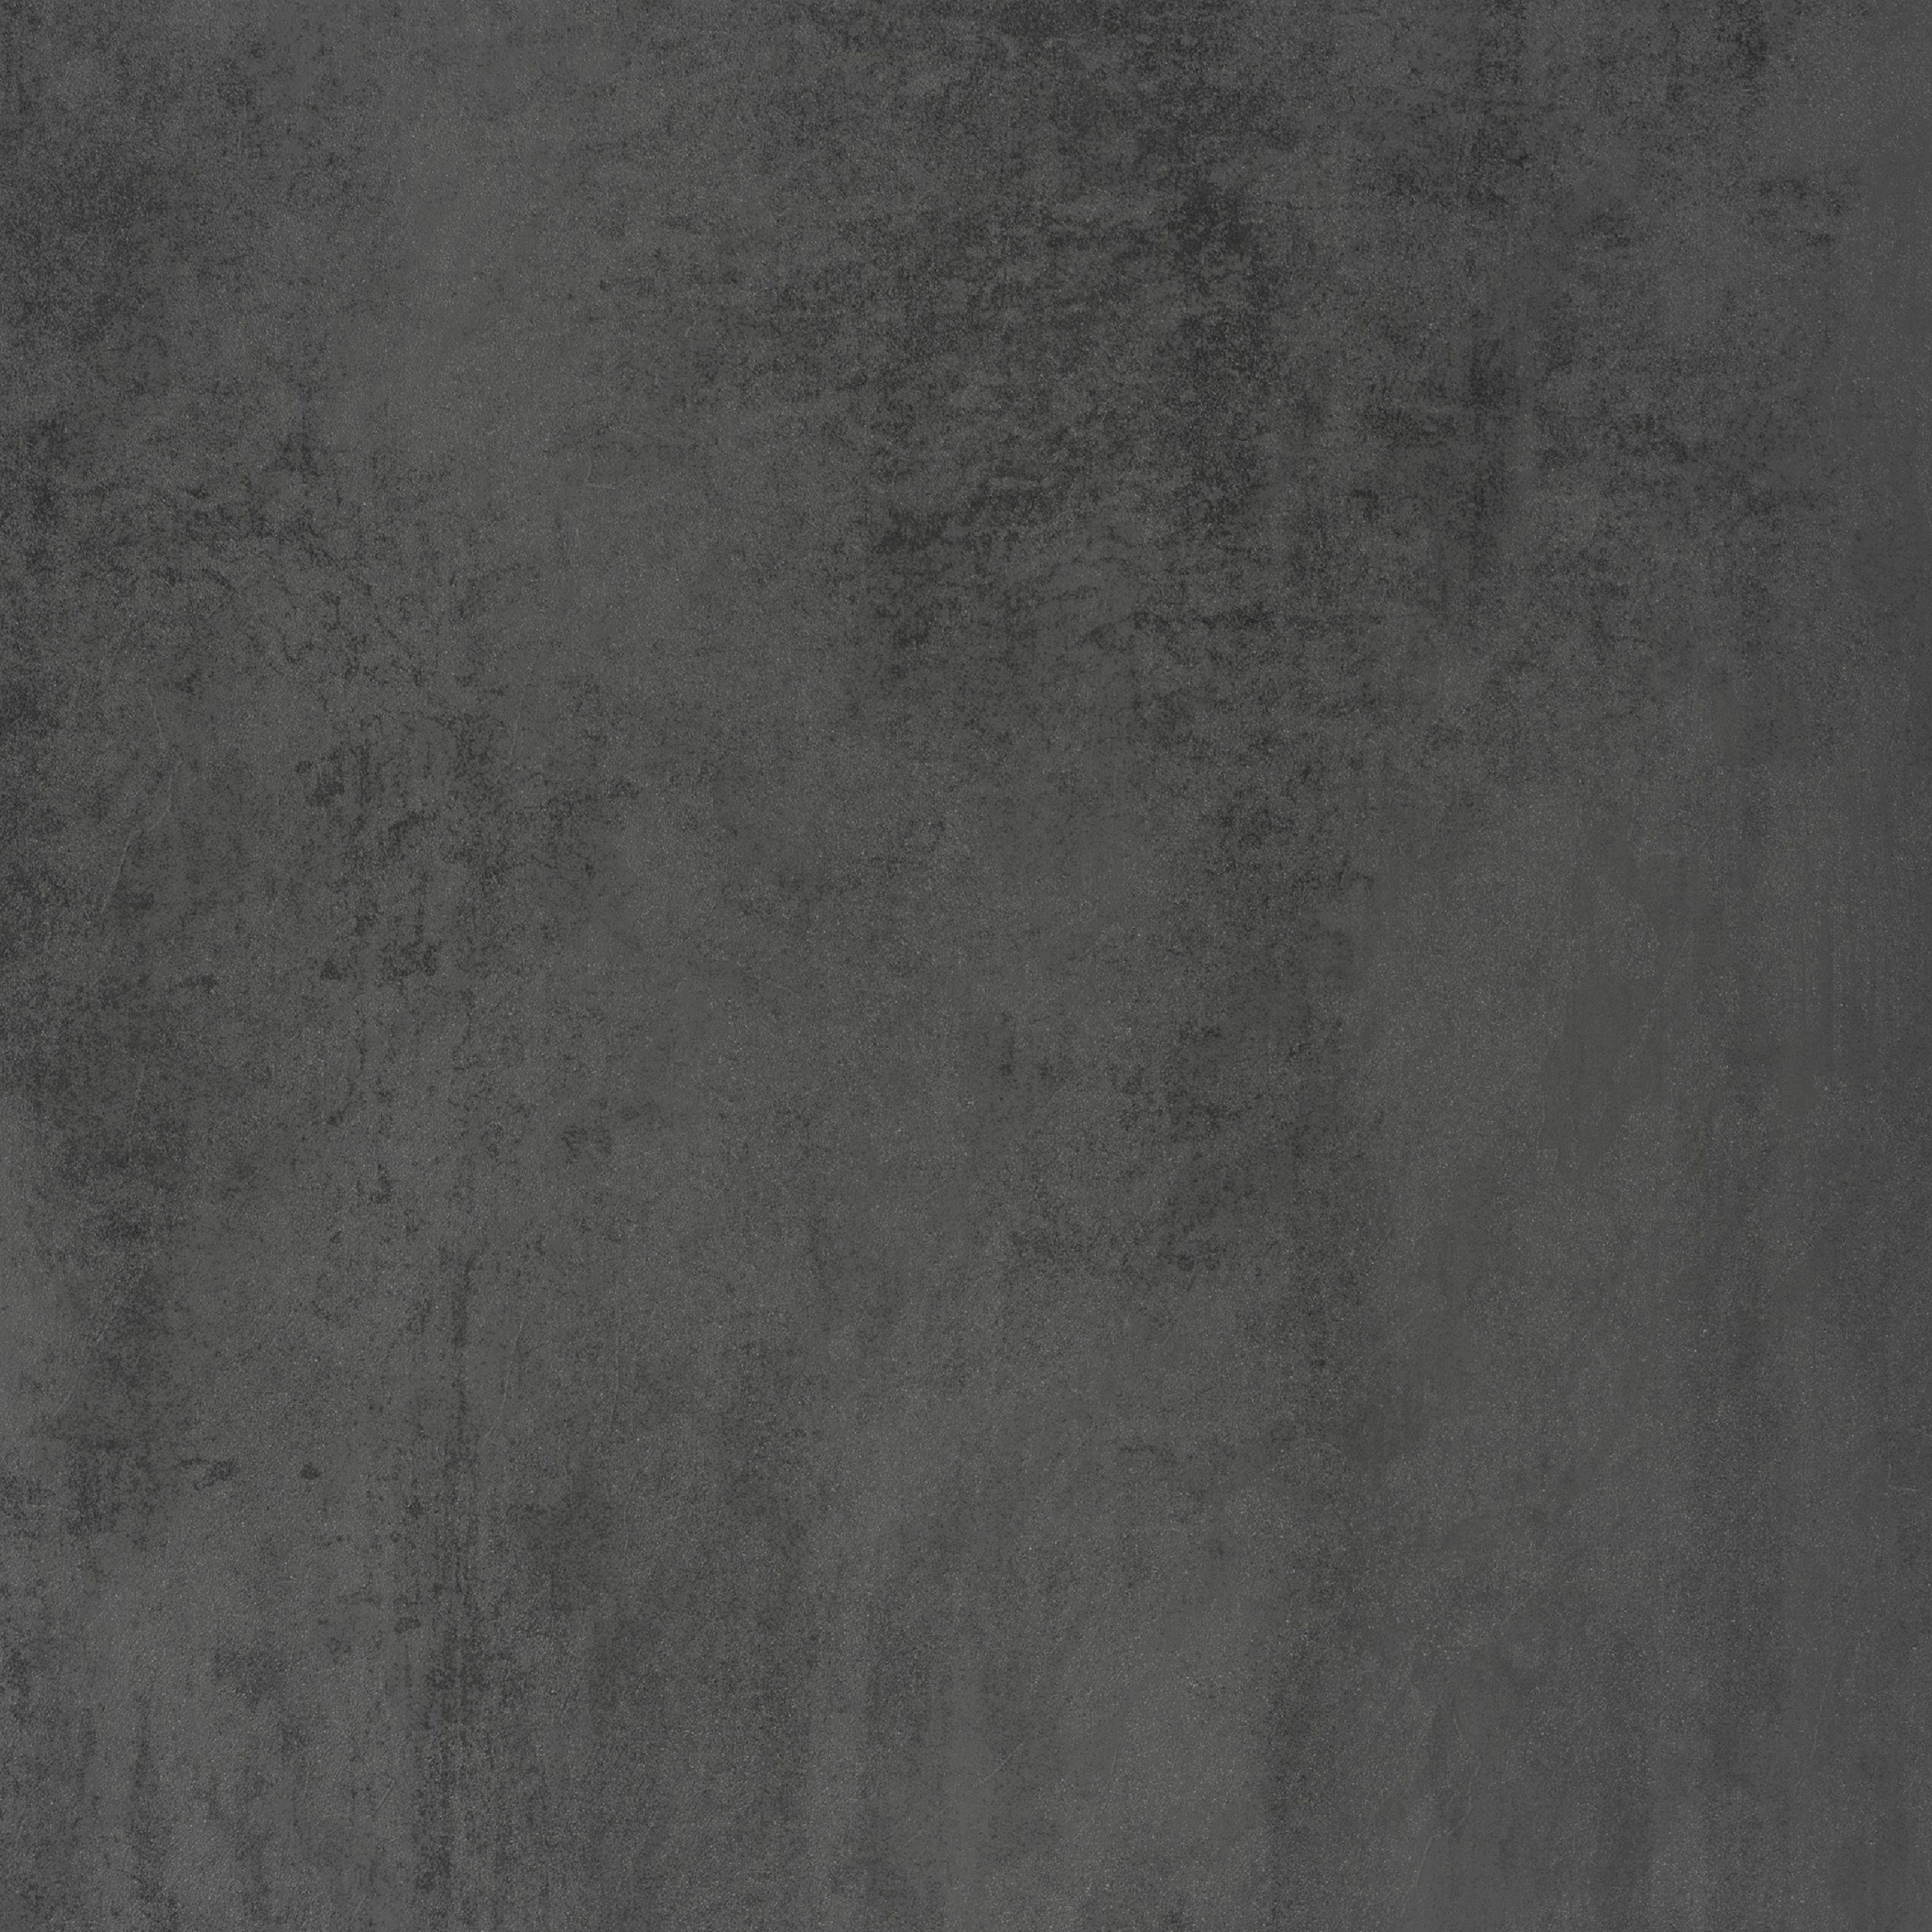 Lisene cm grau | mit MÖBEL 180 Unterschrank für HELD MDF-Fronten graphit breit, Matt/grafit Stauraum, viel Luhe waagerechter